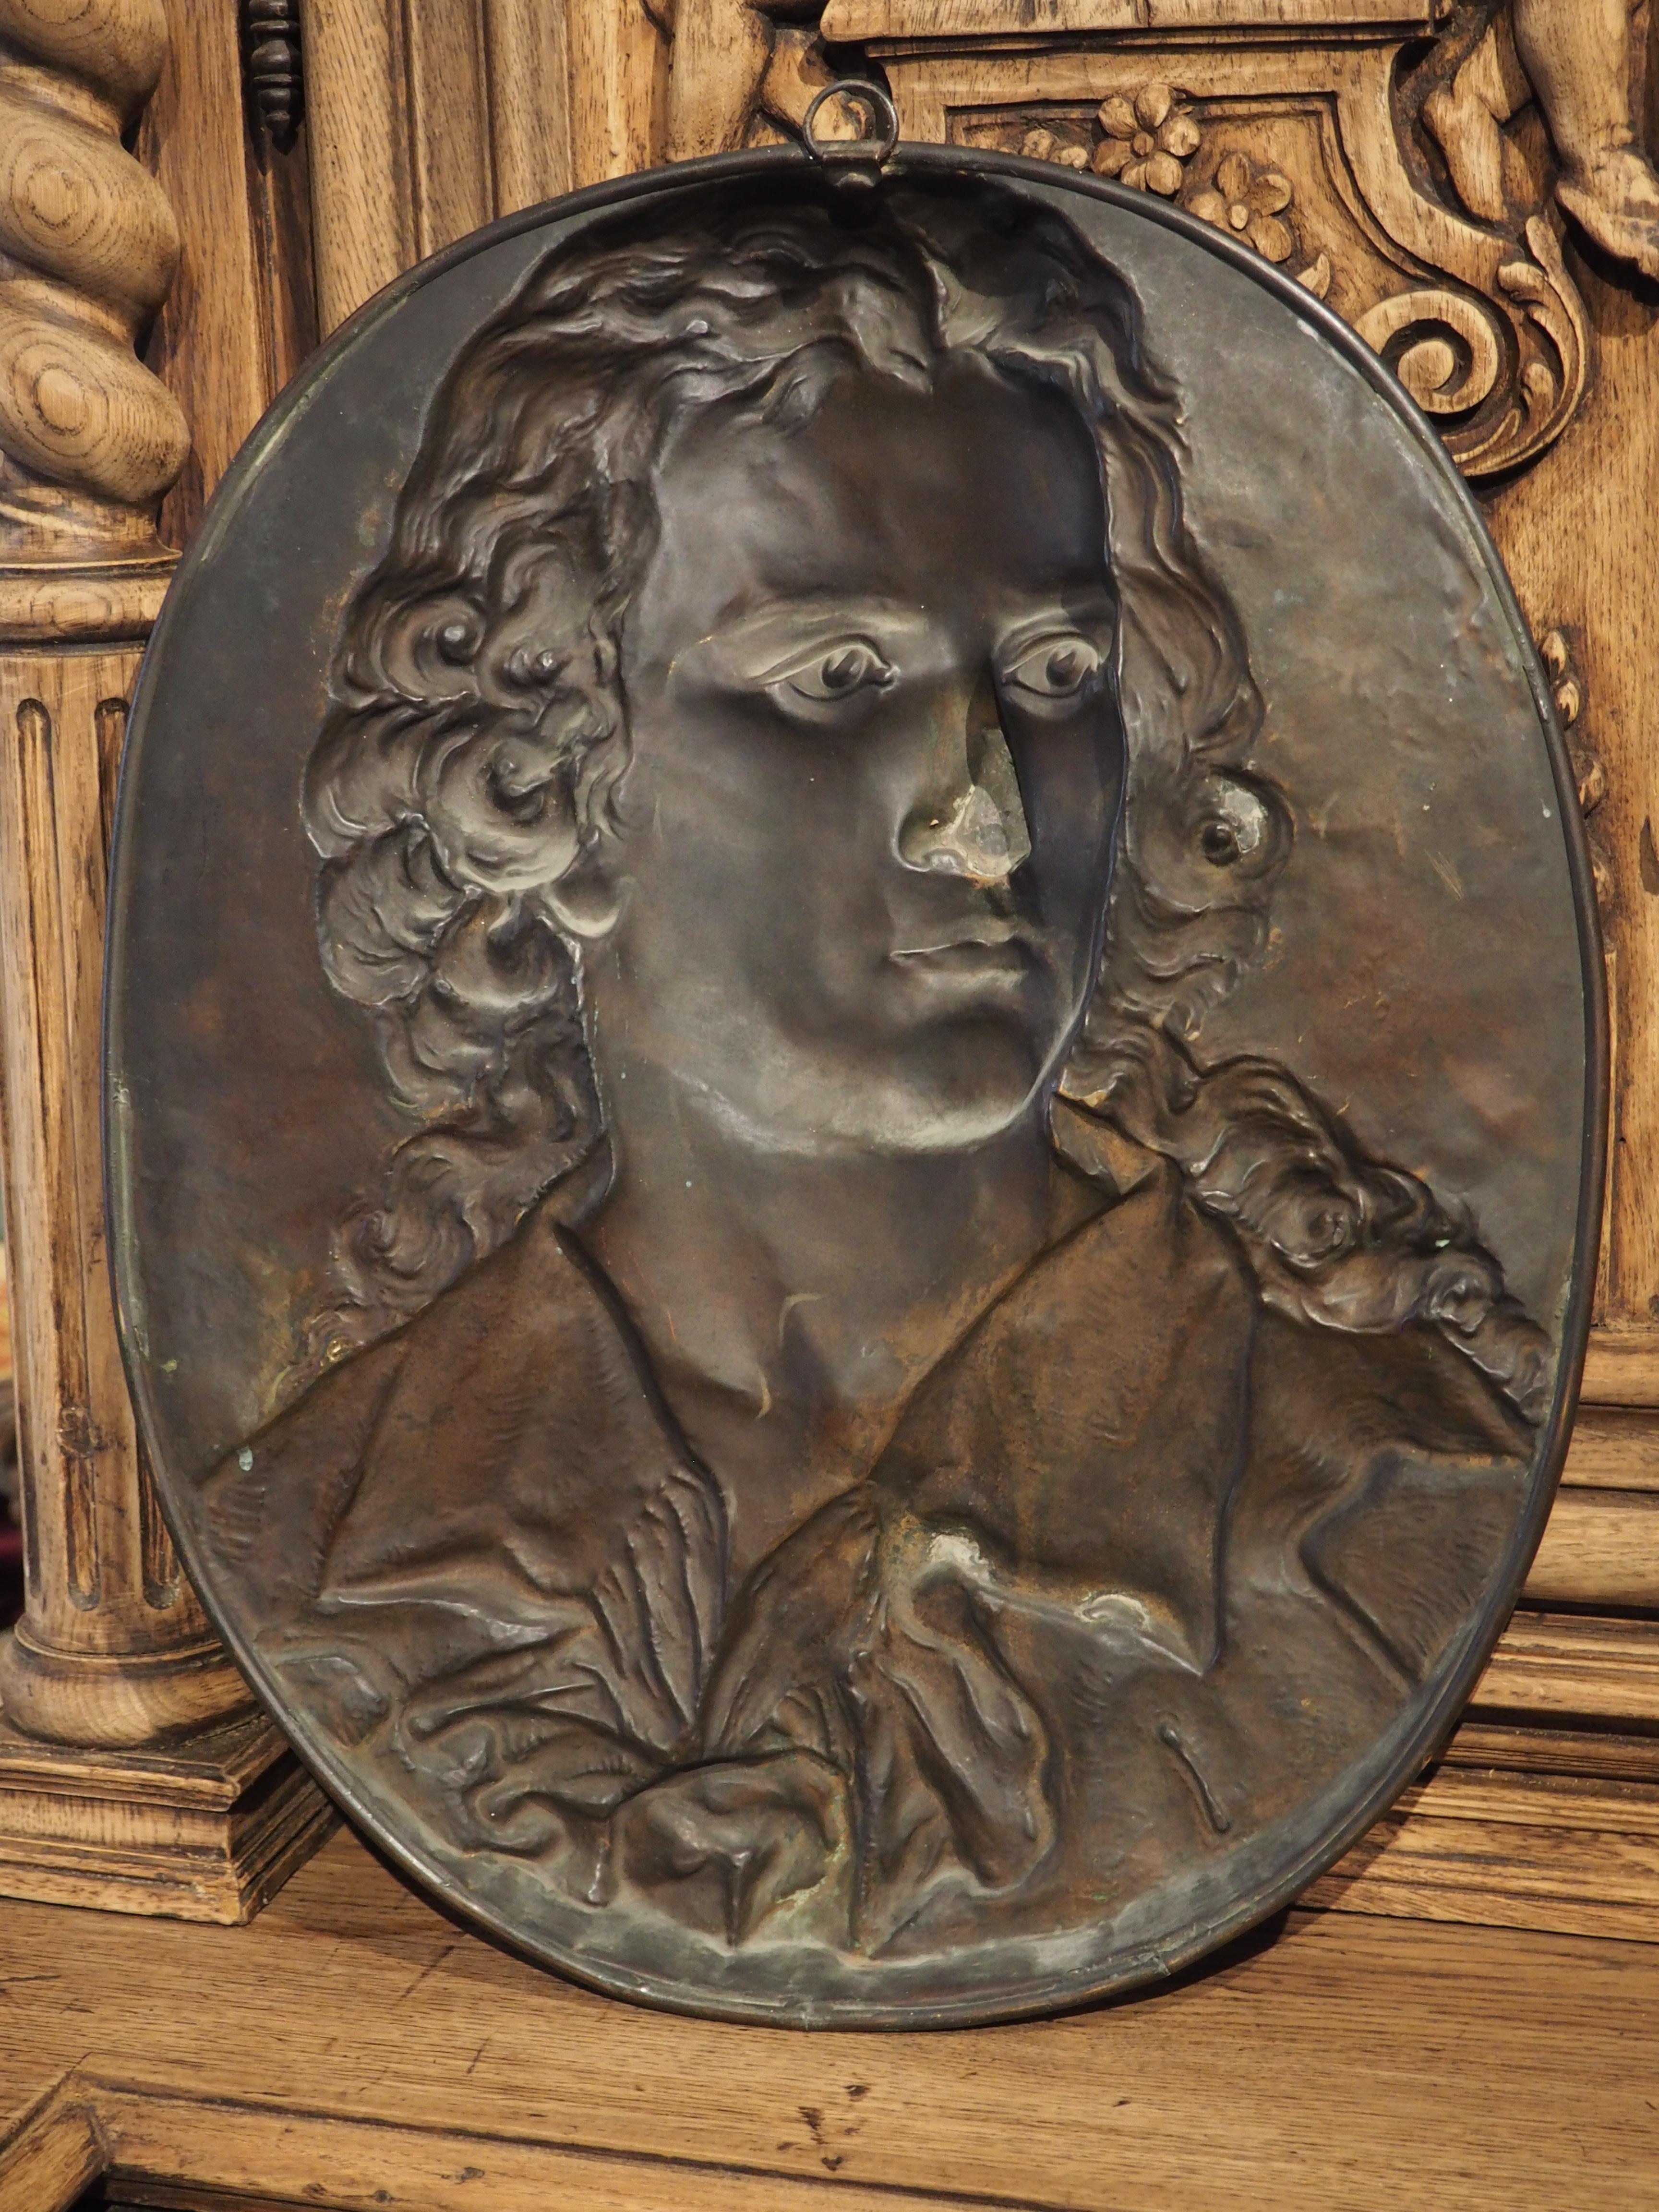 Utilisant la technique ancienne du travail du métal connue sous le nom de repousse, cette plaque de bas-relief en cuivre représentant un jeune noble a été ciselée à la main par un artiste français dans les années 1800. Le repoussage exige que le